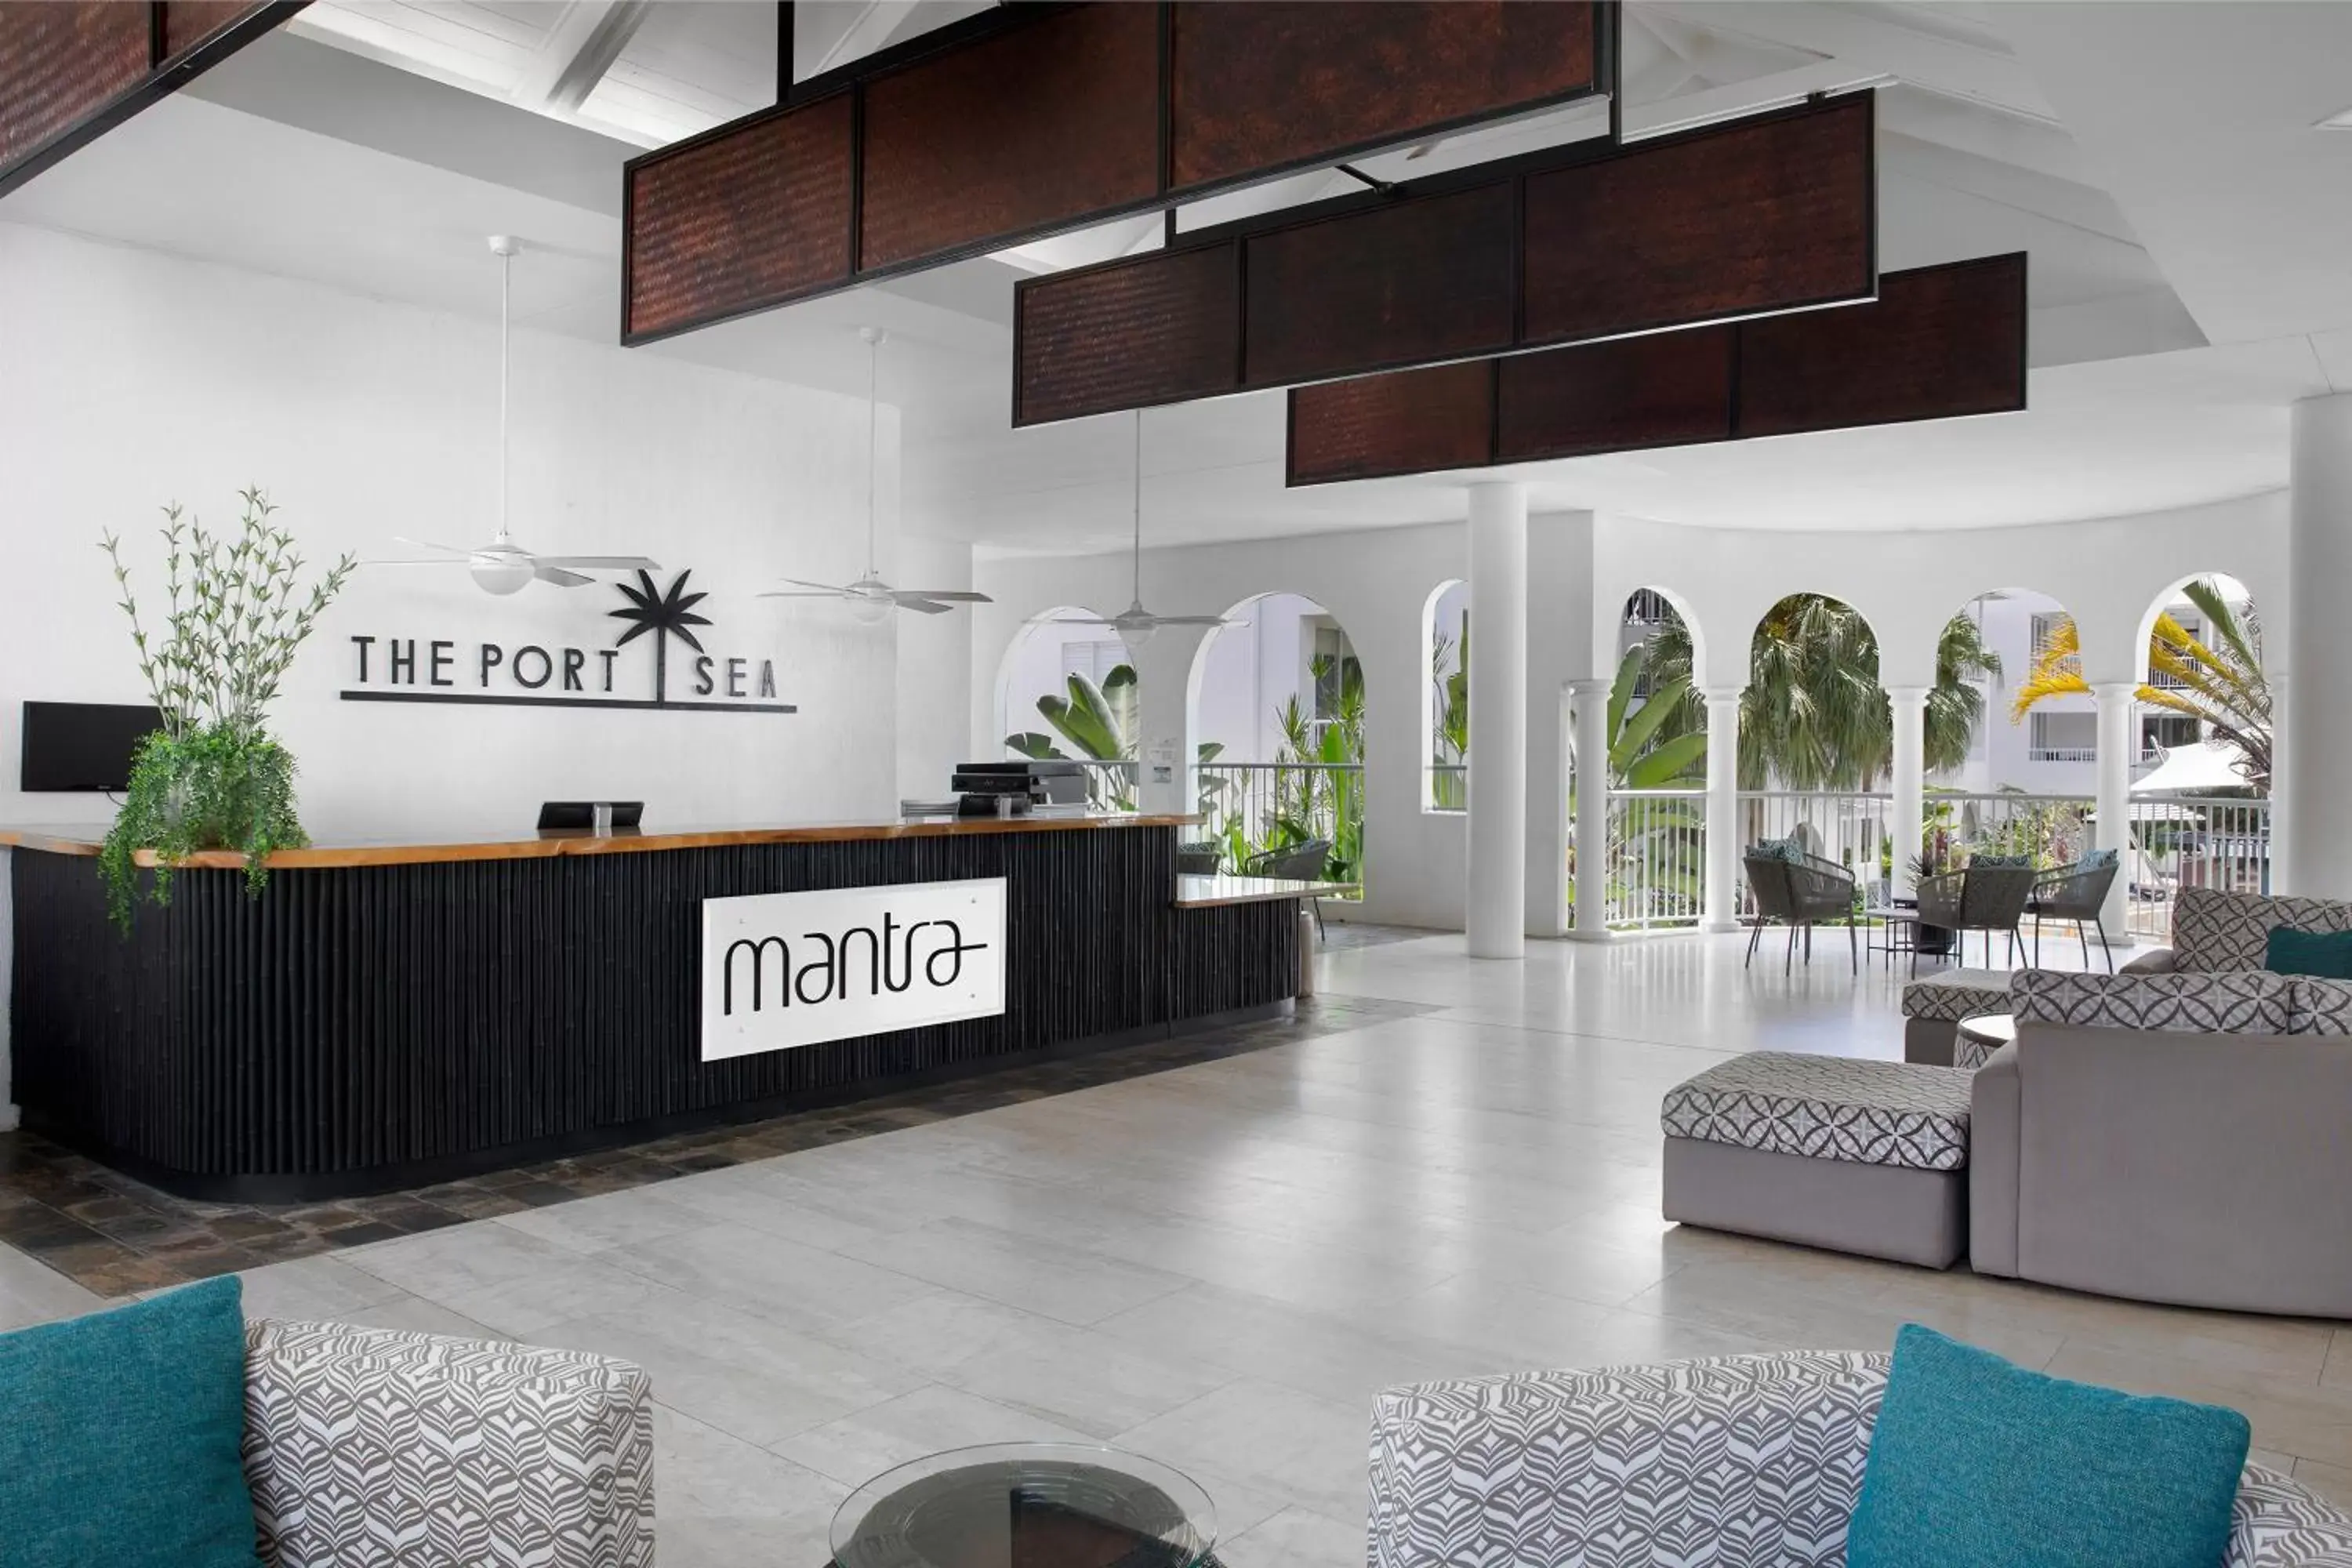 Lobby or reception, Lobby/Reception in Mantra PortSea